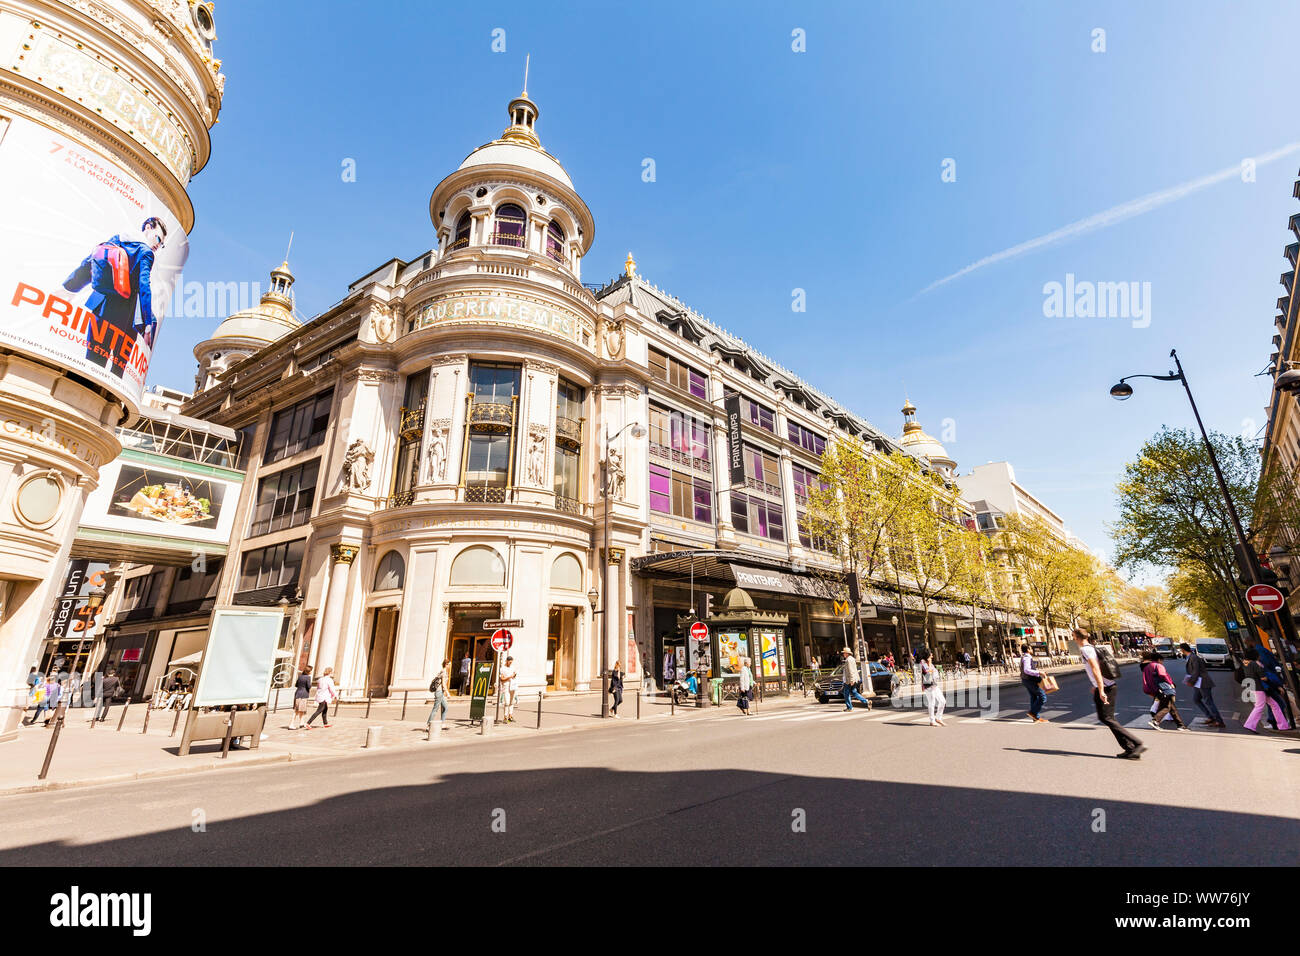 Frankreich, Paris, Stadtzentrum, Boulevard Haussmann, das Kaufhaus Printemps, Menschen Stockfoto